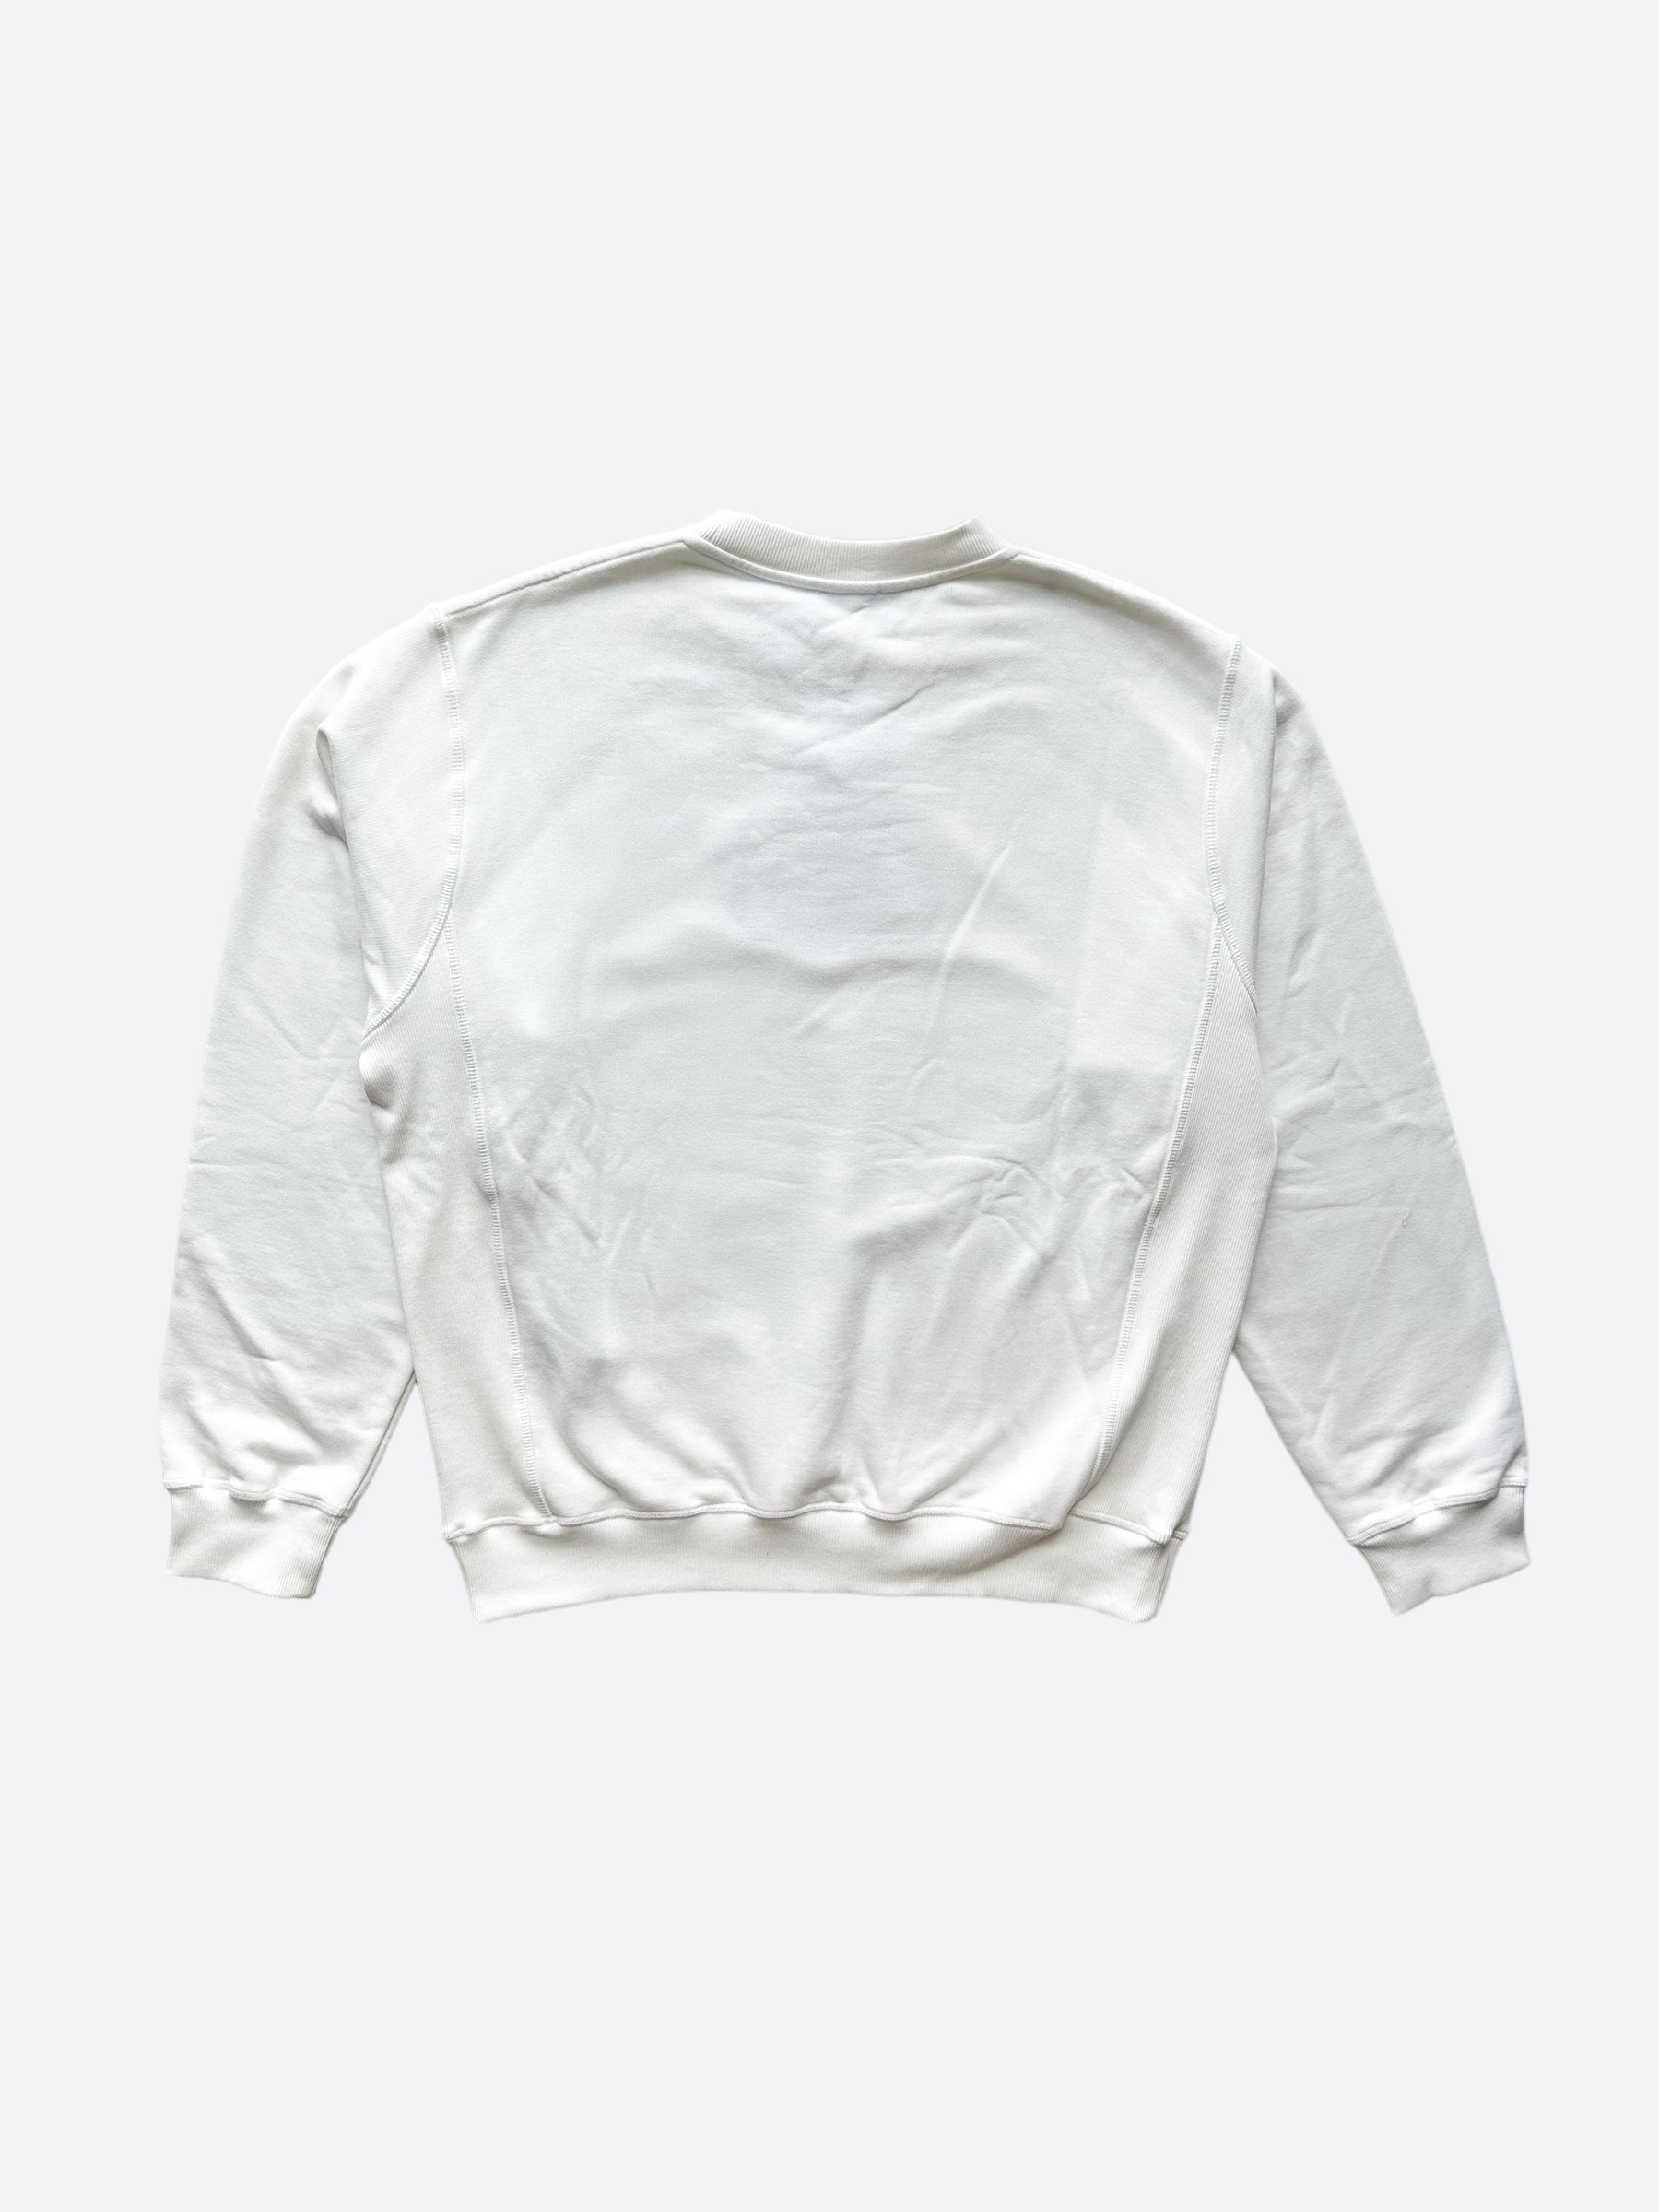 Dior Kenny Scharf White Logo Sweater